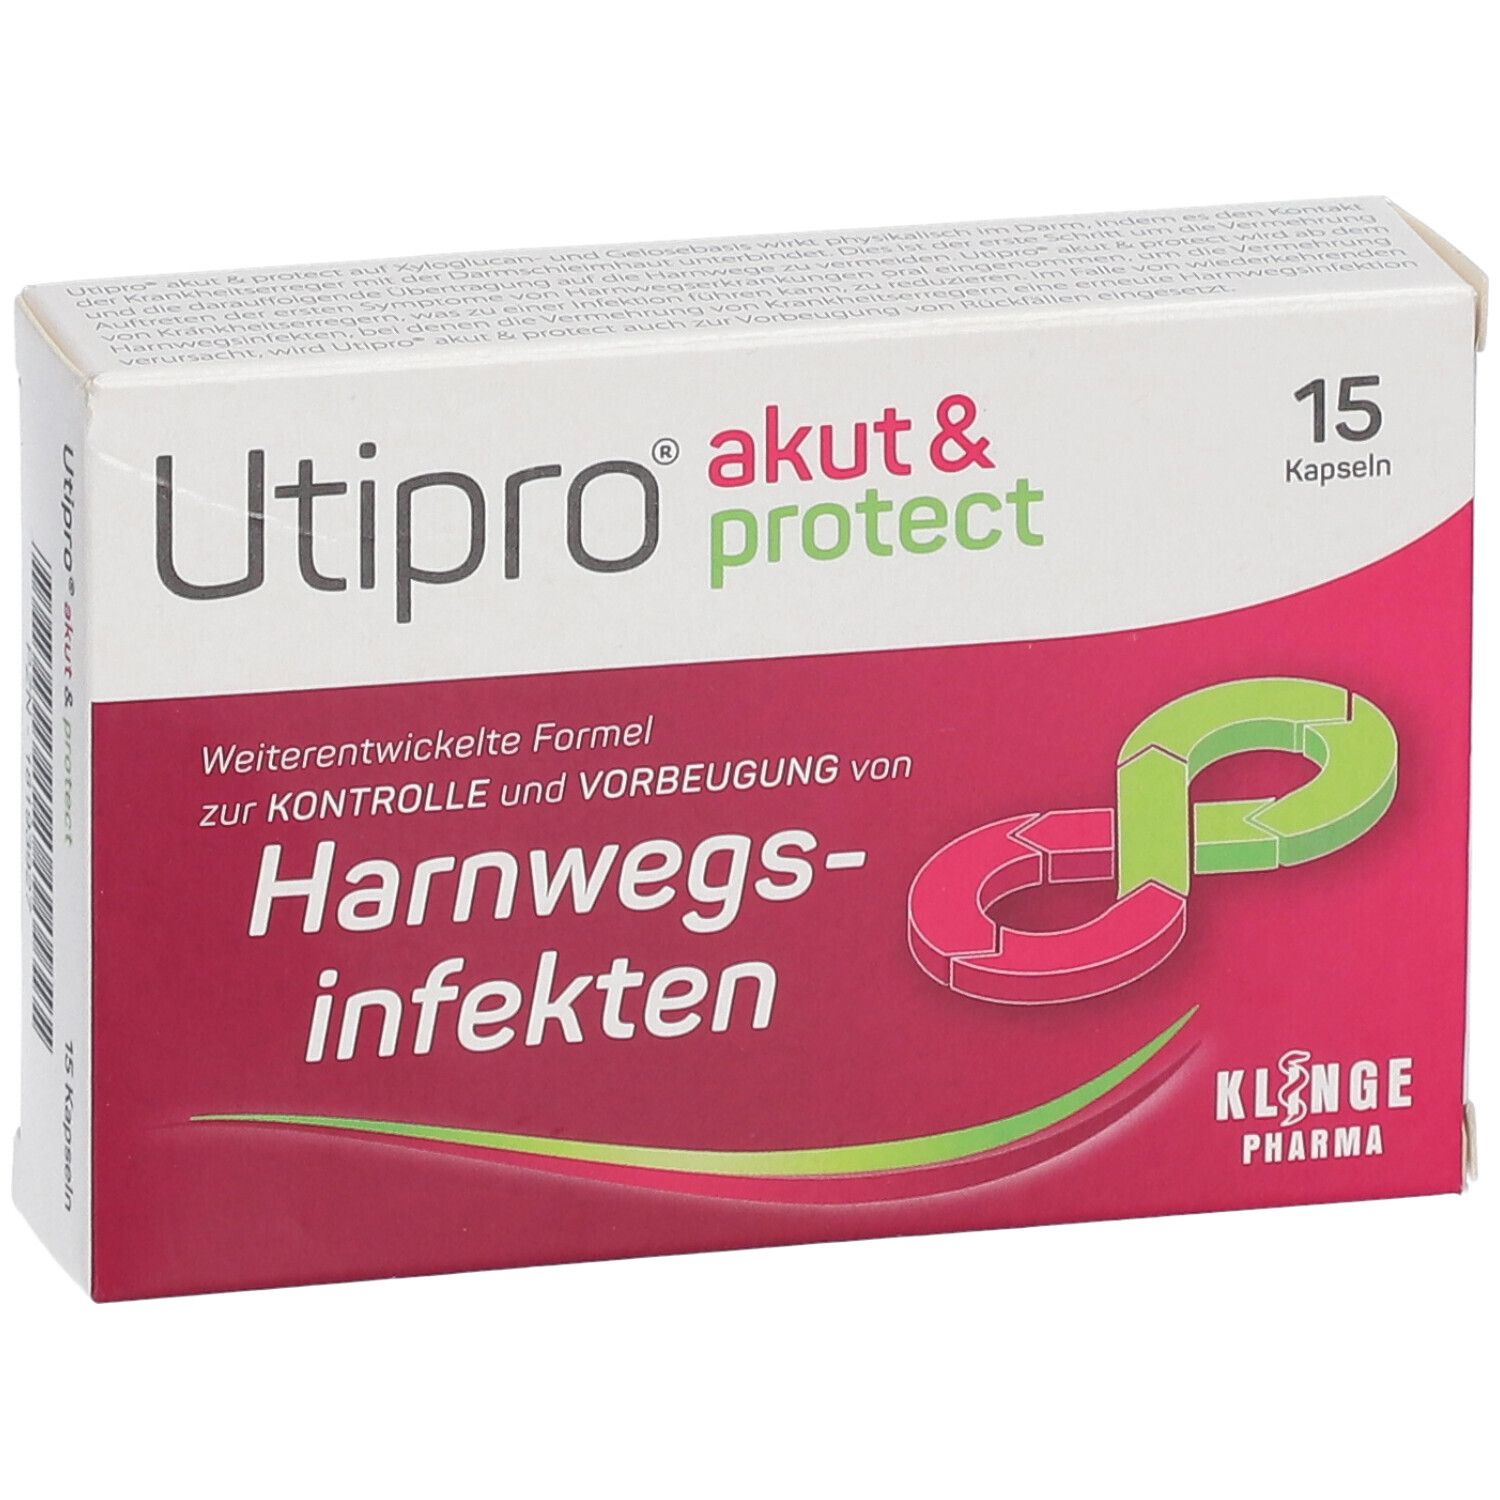 Utipro® akut & protect